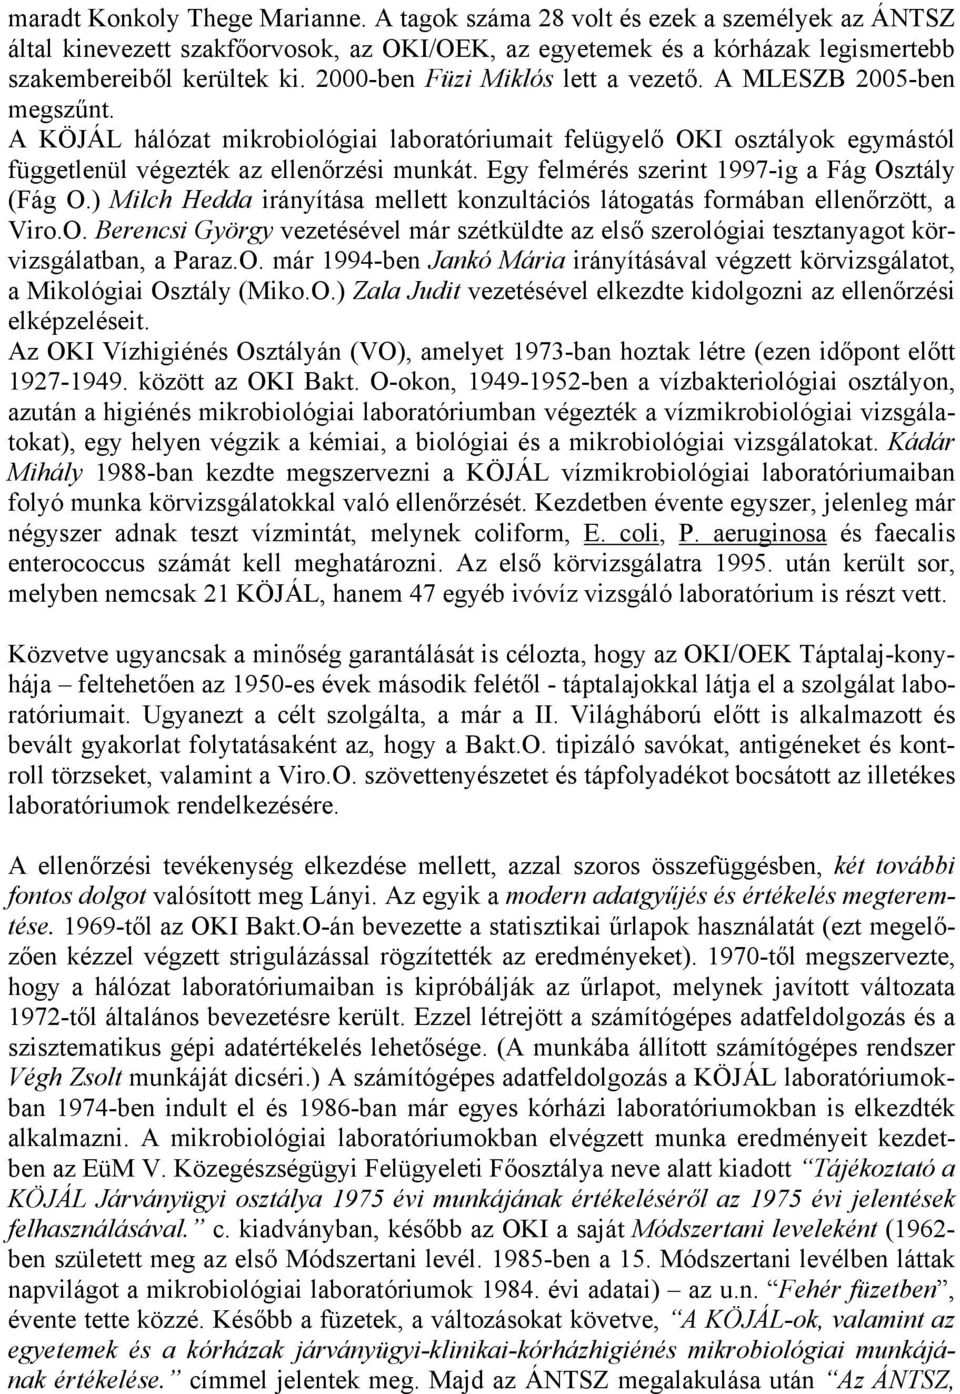 Egy felmérés szerint 1997-ig a Fág Osztály (Fág O.) Milch Hedda irányítása mellett konzultációs látogatás formában ellenőrzött, a Viro.O. Berencsi György vezetésével már szétküldte az első szerológiai tesztanyagot körvizsgálatban, a Paraz.